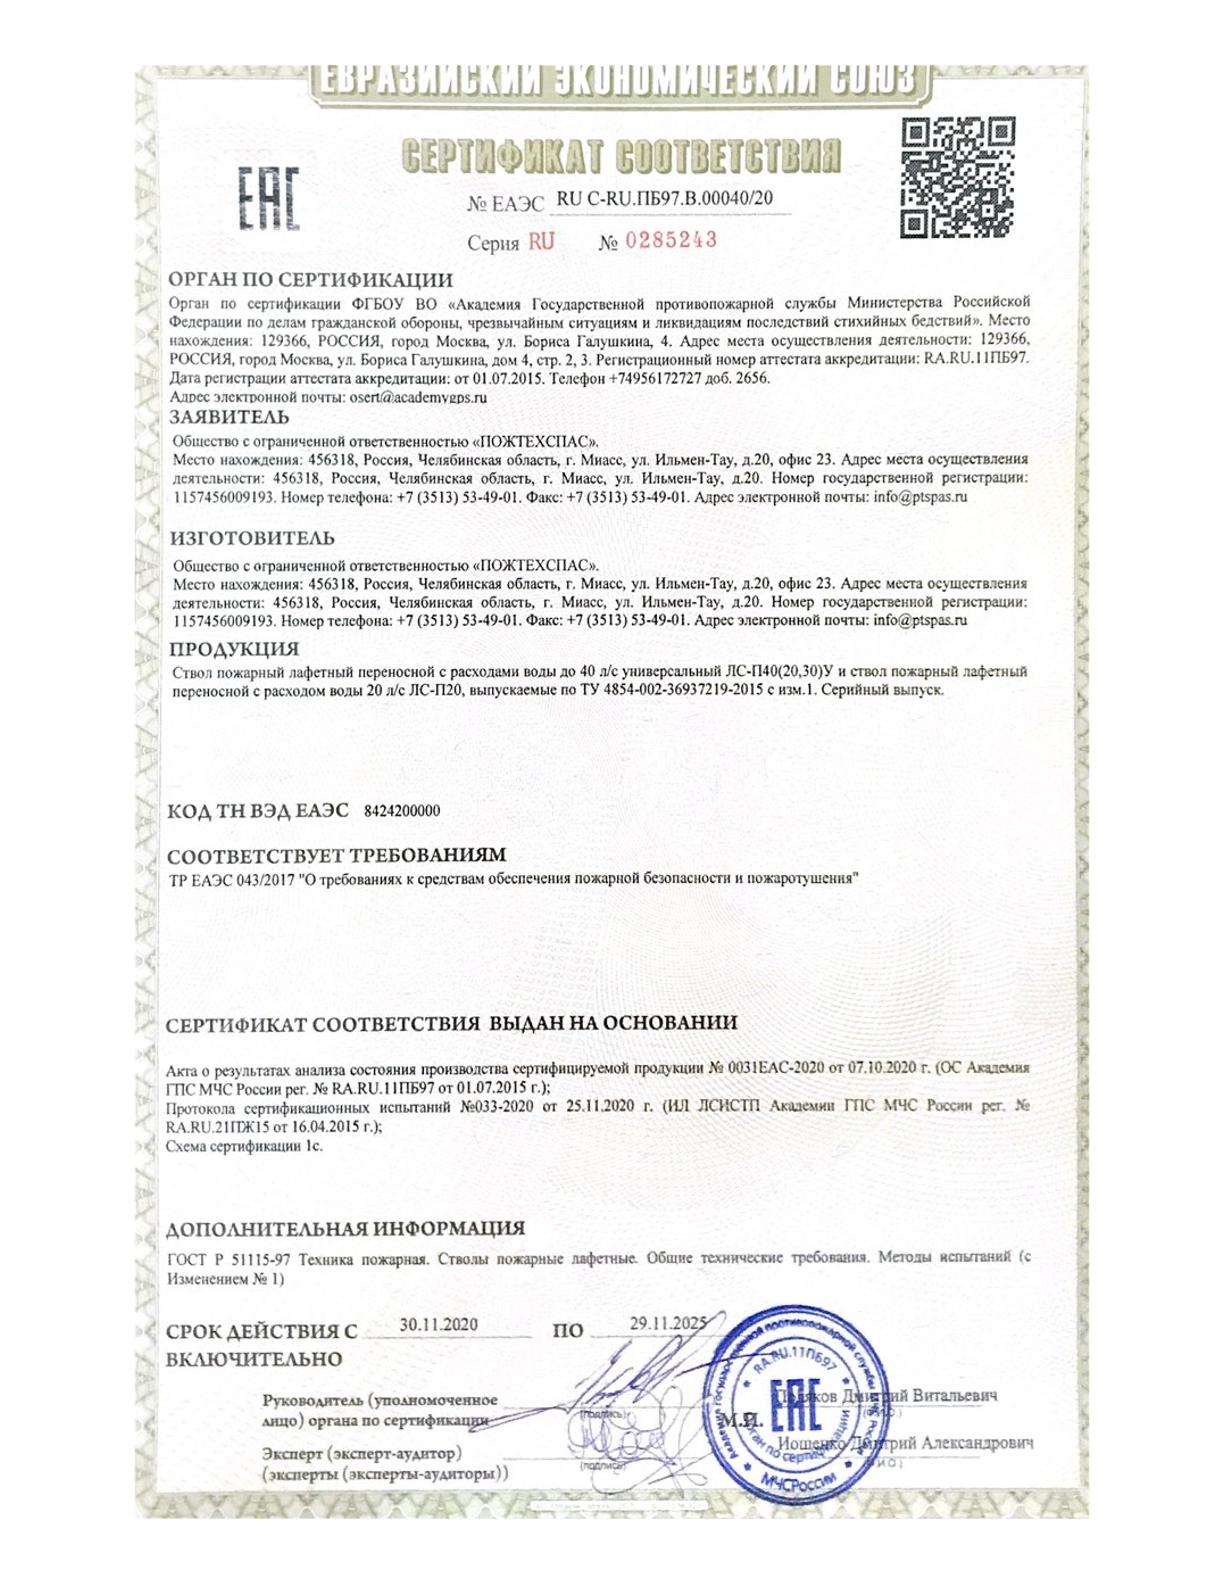 Сертификат соответствия ствол пожарный лафетный переносной универсальный ЛС-П40У, ЛС-П20